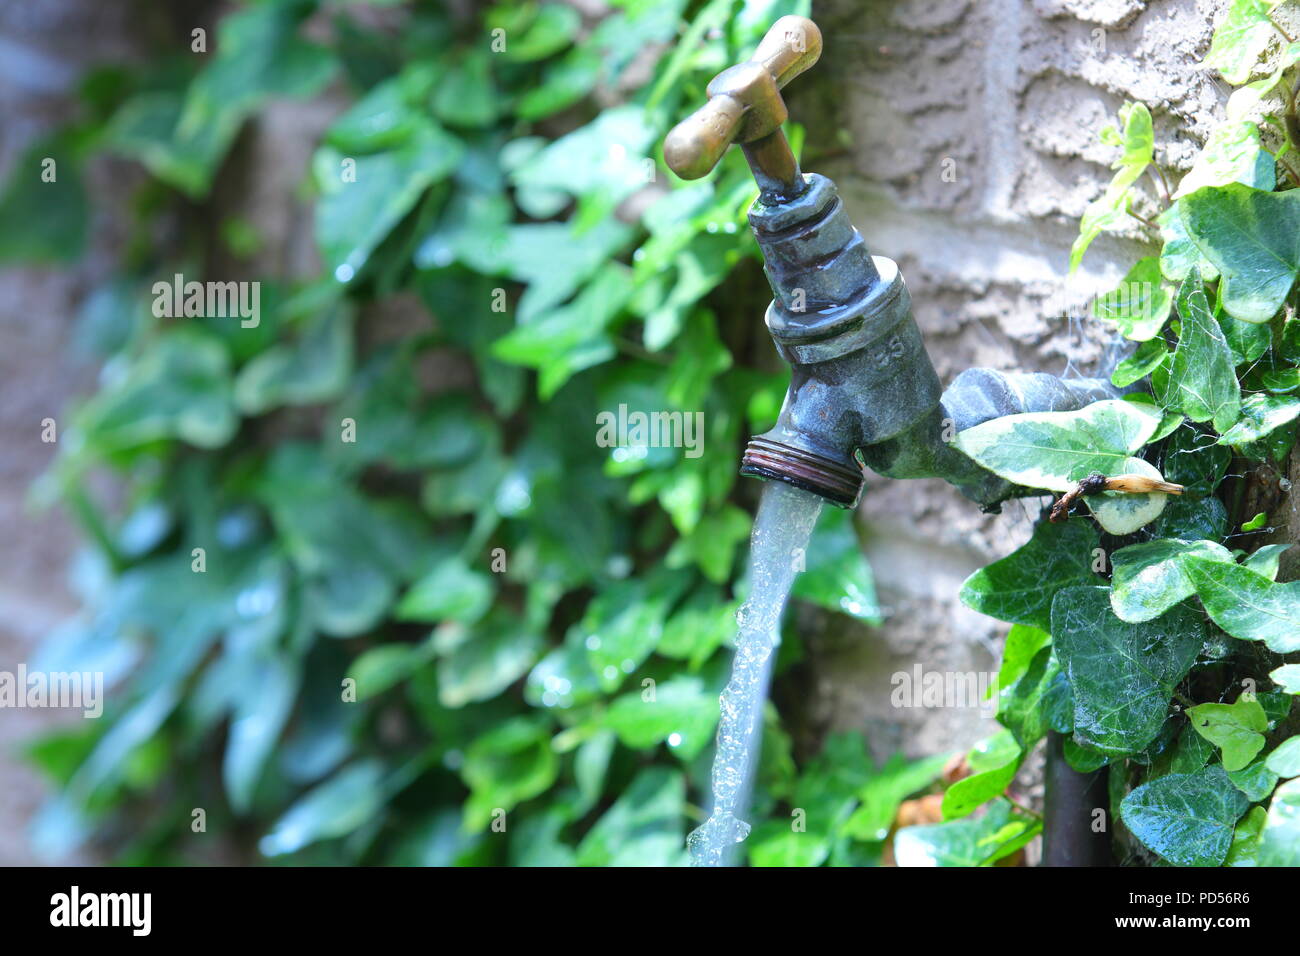 A running an outdoor garden tap Stock Photo